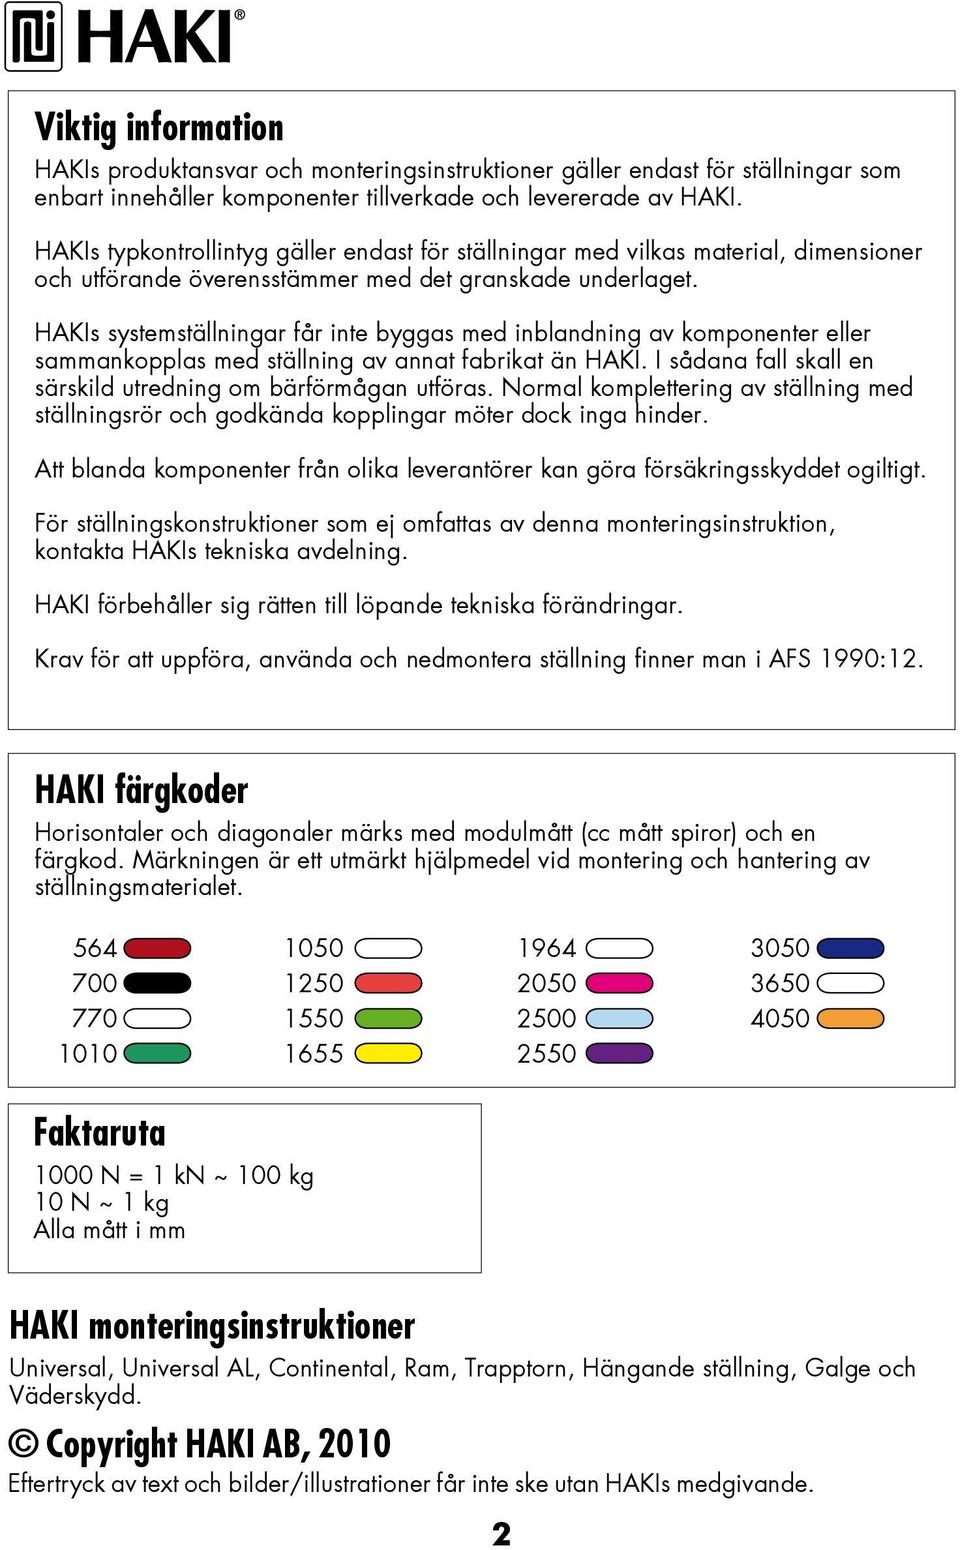 HAKIs systemställningar får inte byggas med inblandning av komponenter eller sammankopplas med ställning av annat fabrikat än HAKI. I sådana fall skall en särskild utredning om bärförmågan utföras.